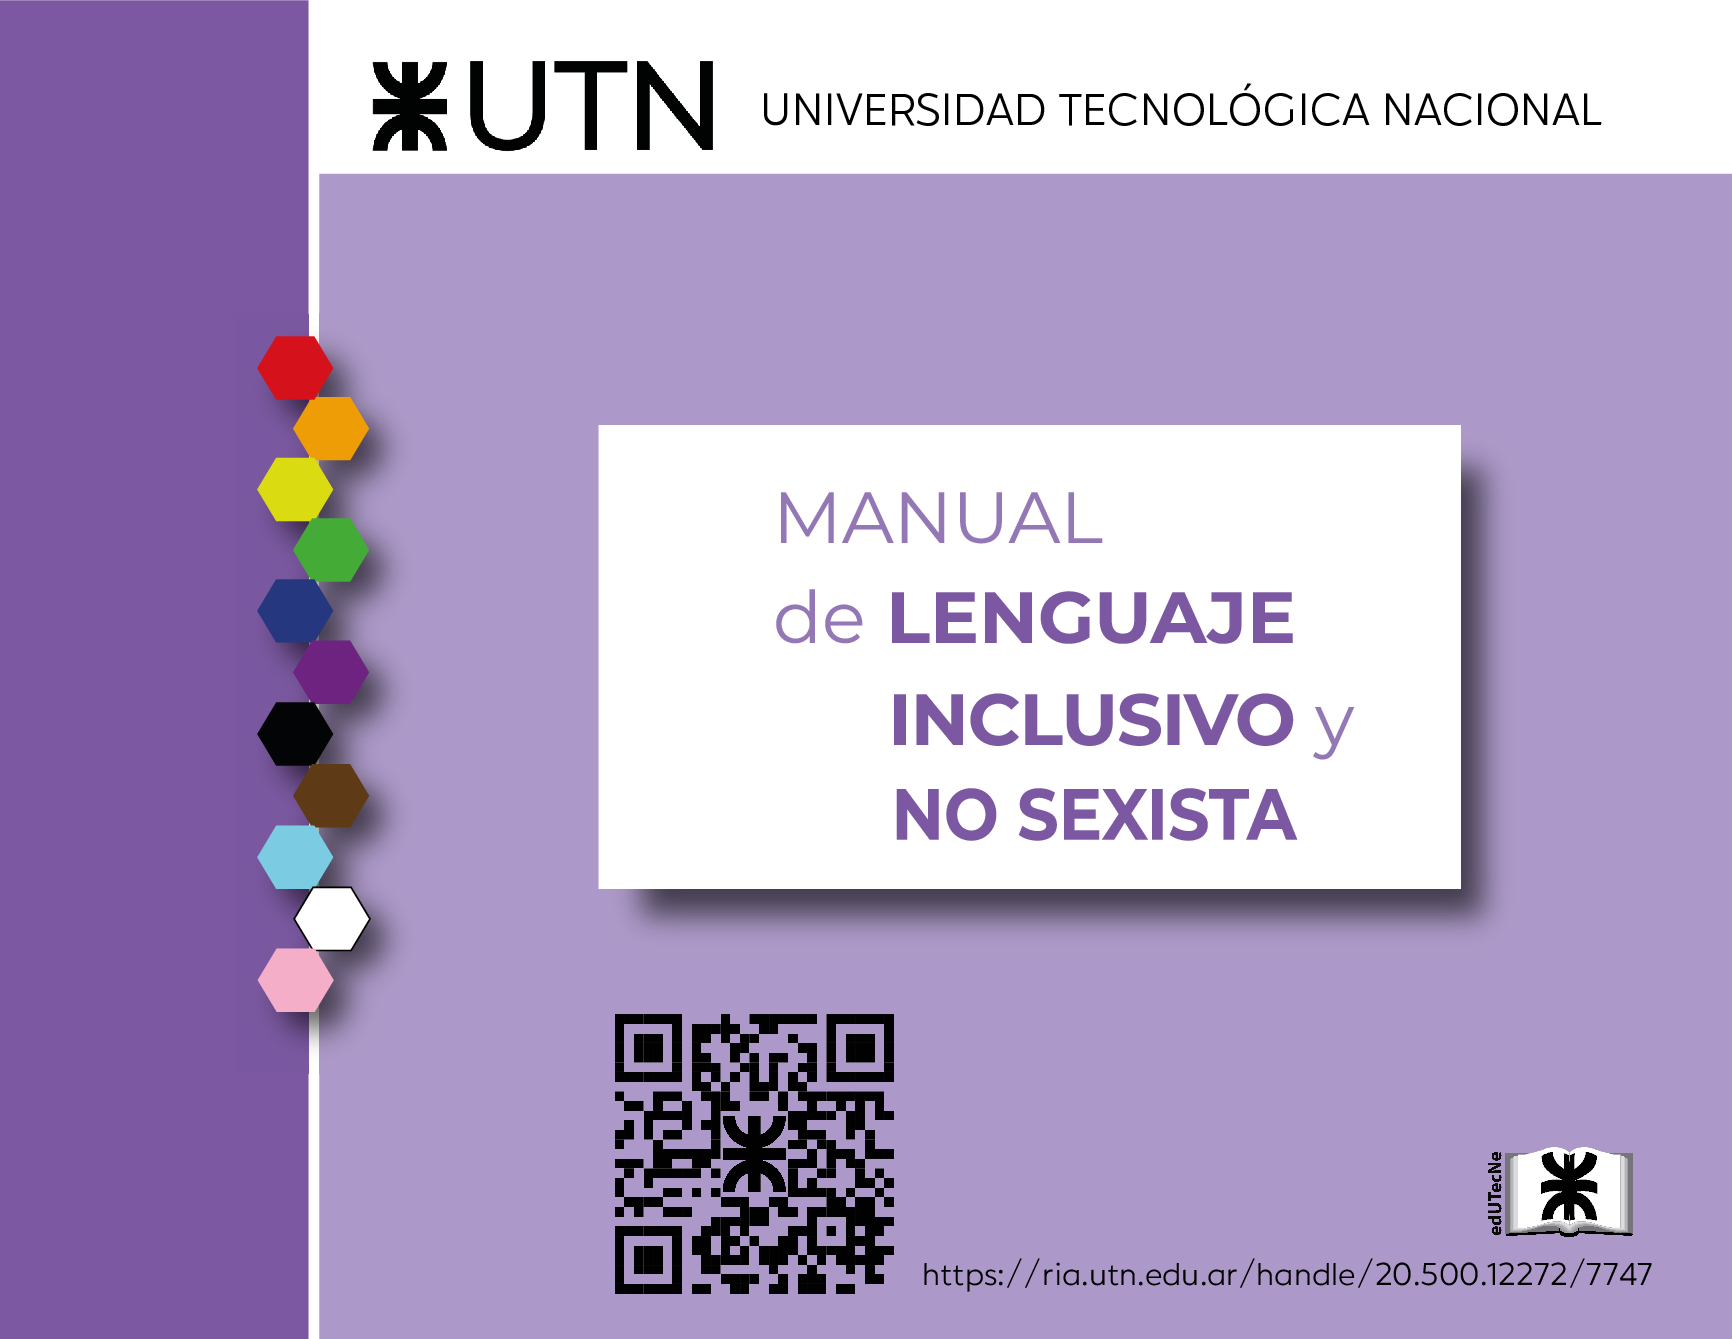 La UTN publicó el Manual de Lenguaje Inclusivo y no Sexista de la Universidad